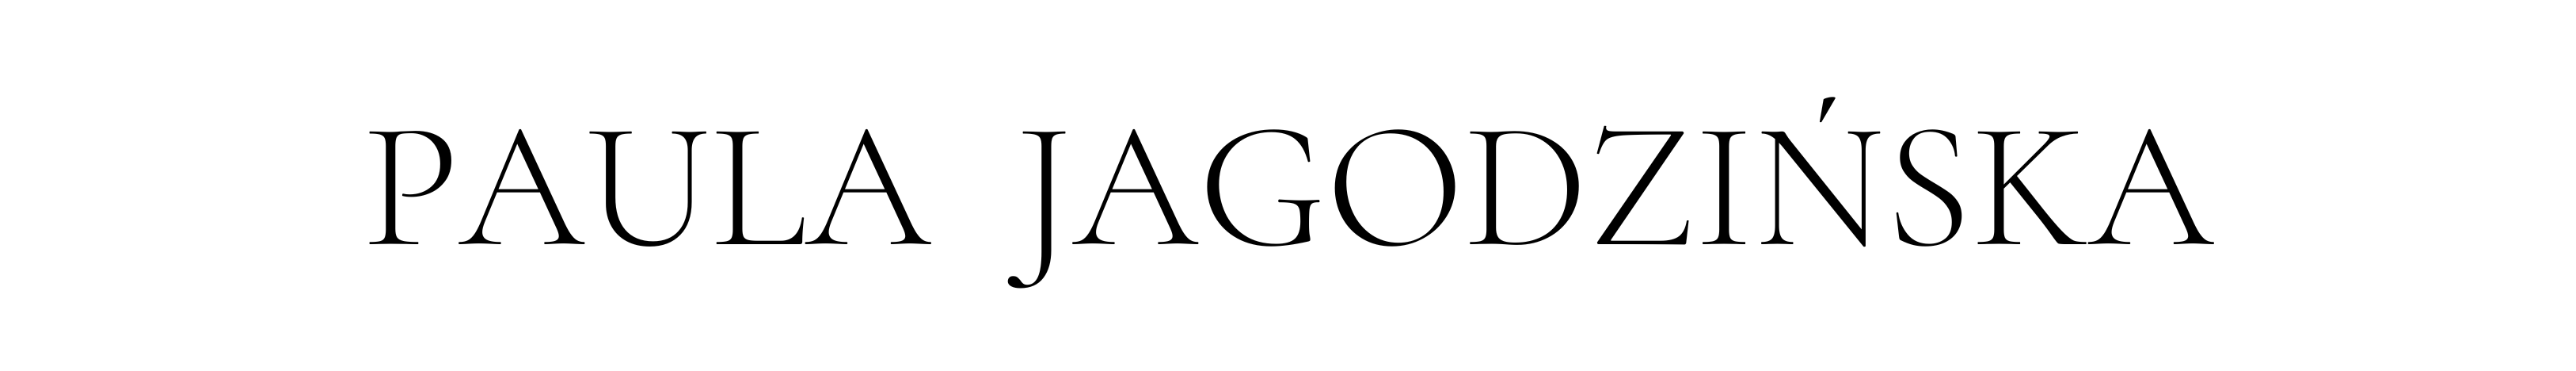 Koronkowy zestaw / Konkurs Allegro #mamswójstyl - Paula JagodzińskaPaula Jagodzińska